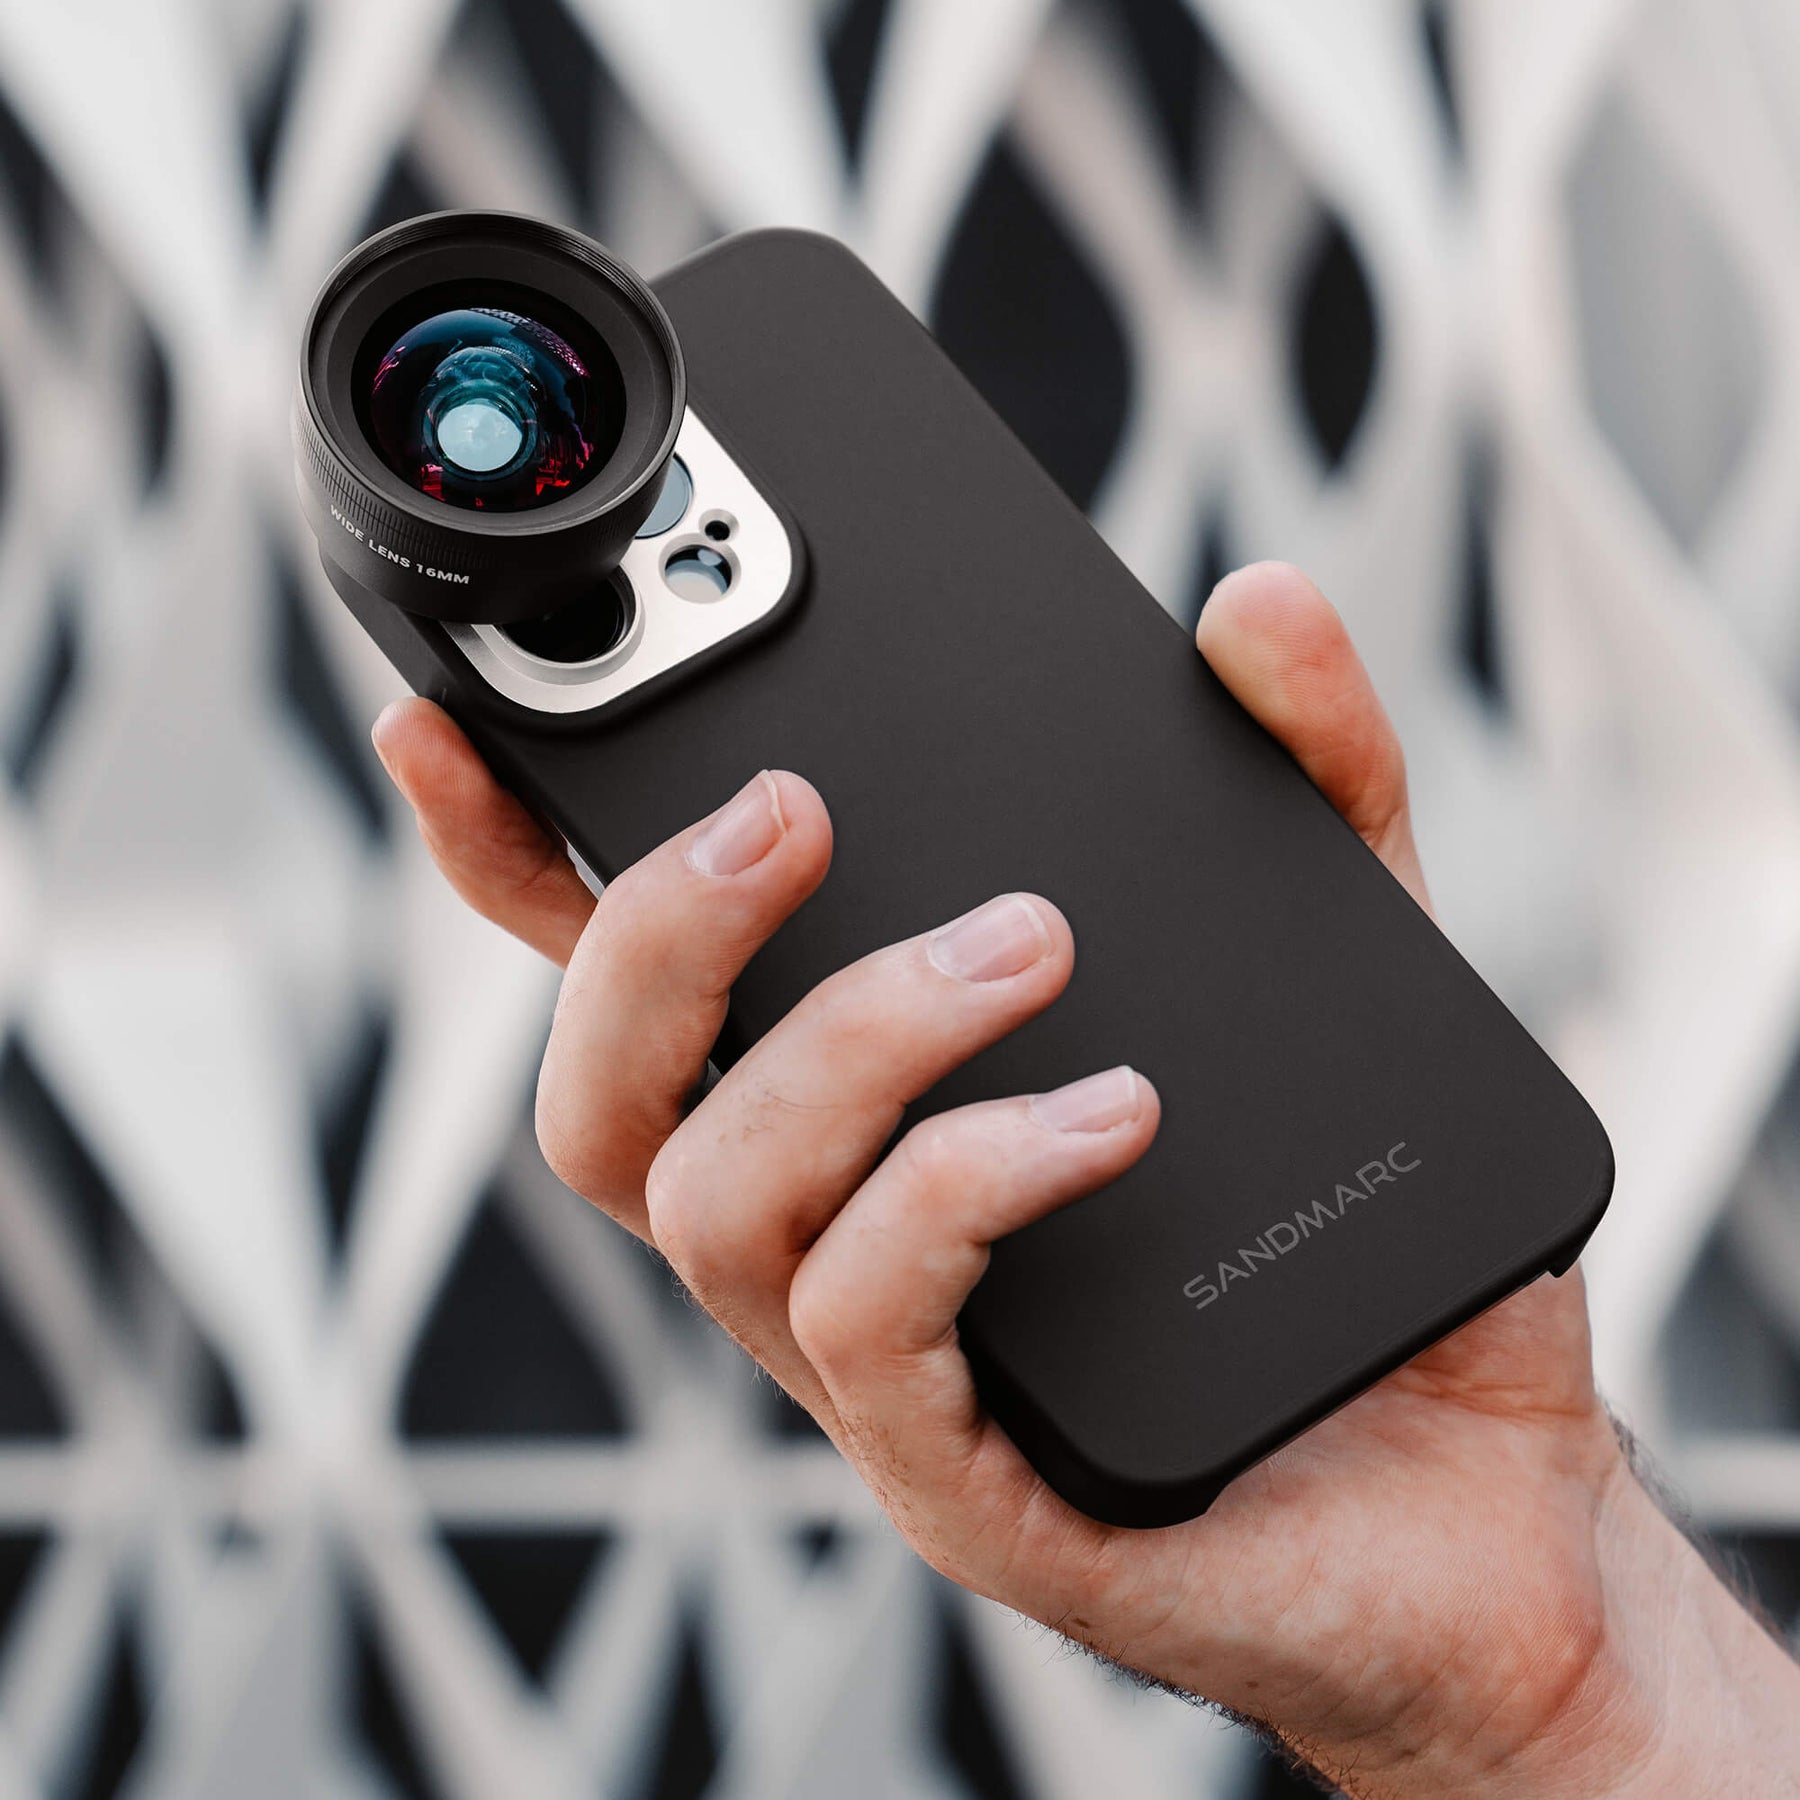 iPhone 15 Pro Max Lens Kit for Video (Filmmaking) - SANDMARC